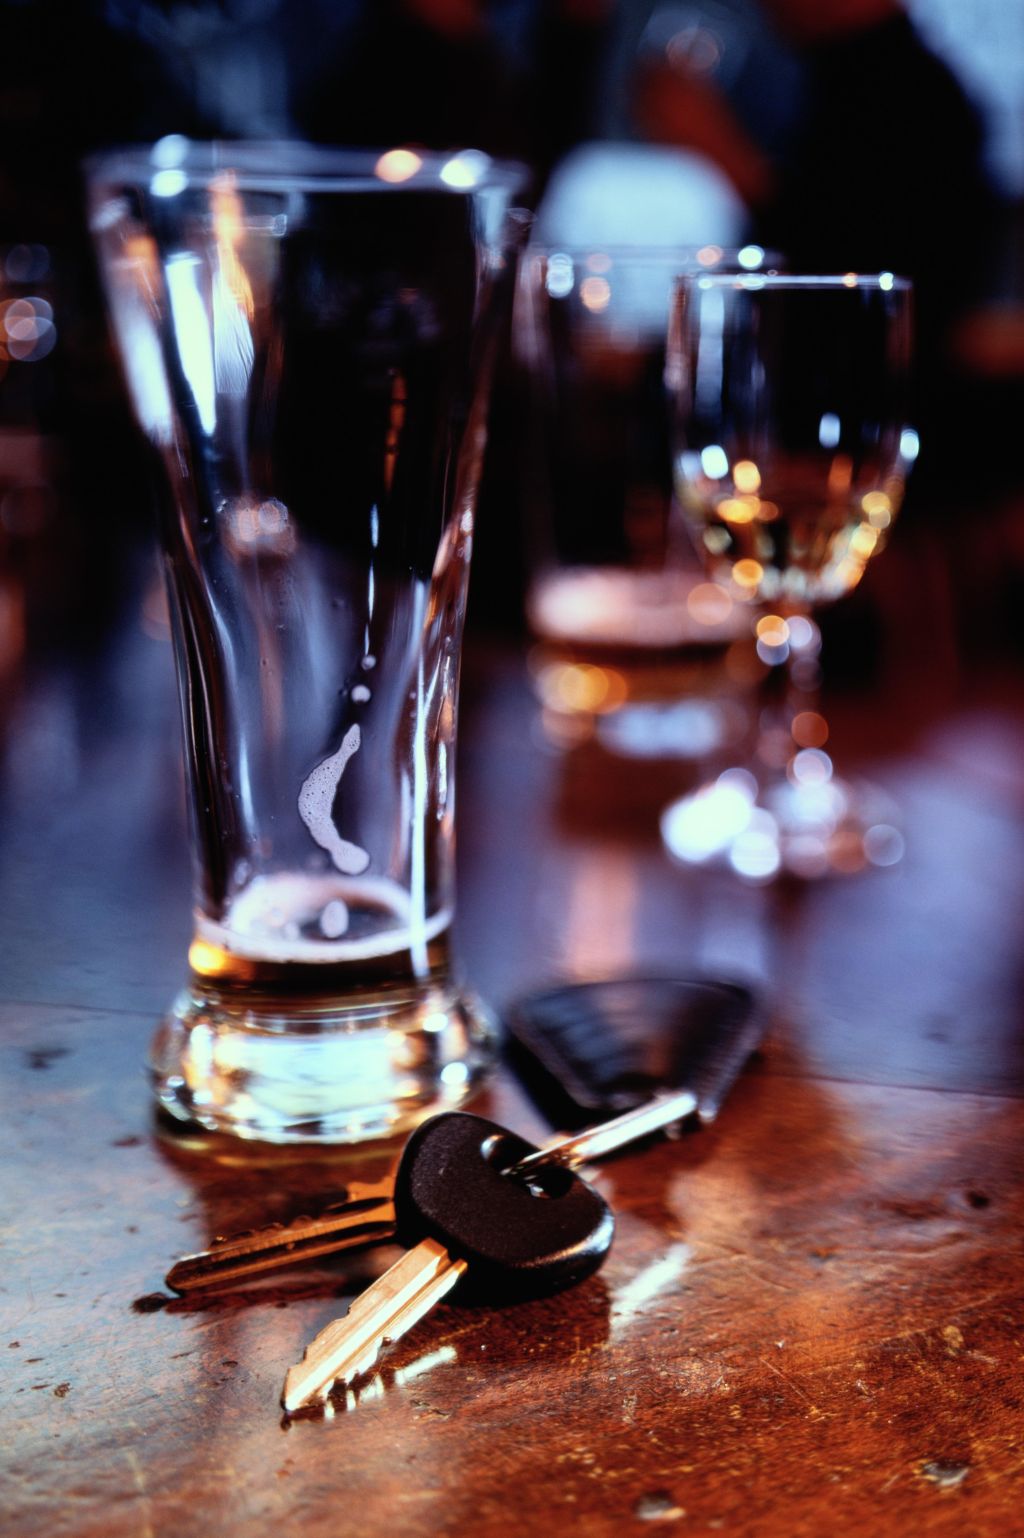 Set of car keys lying beside lager glass on bar